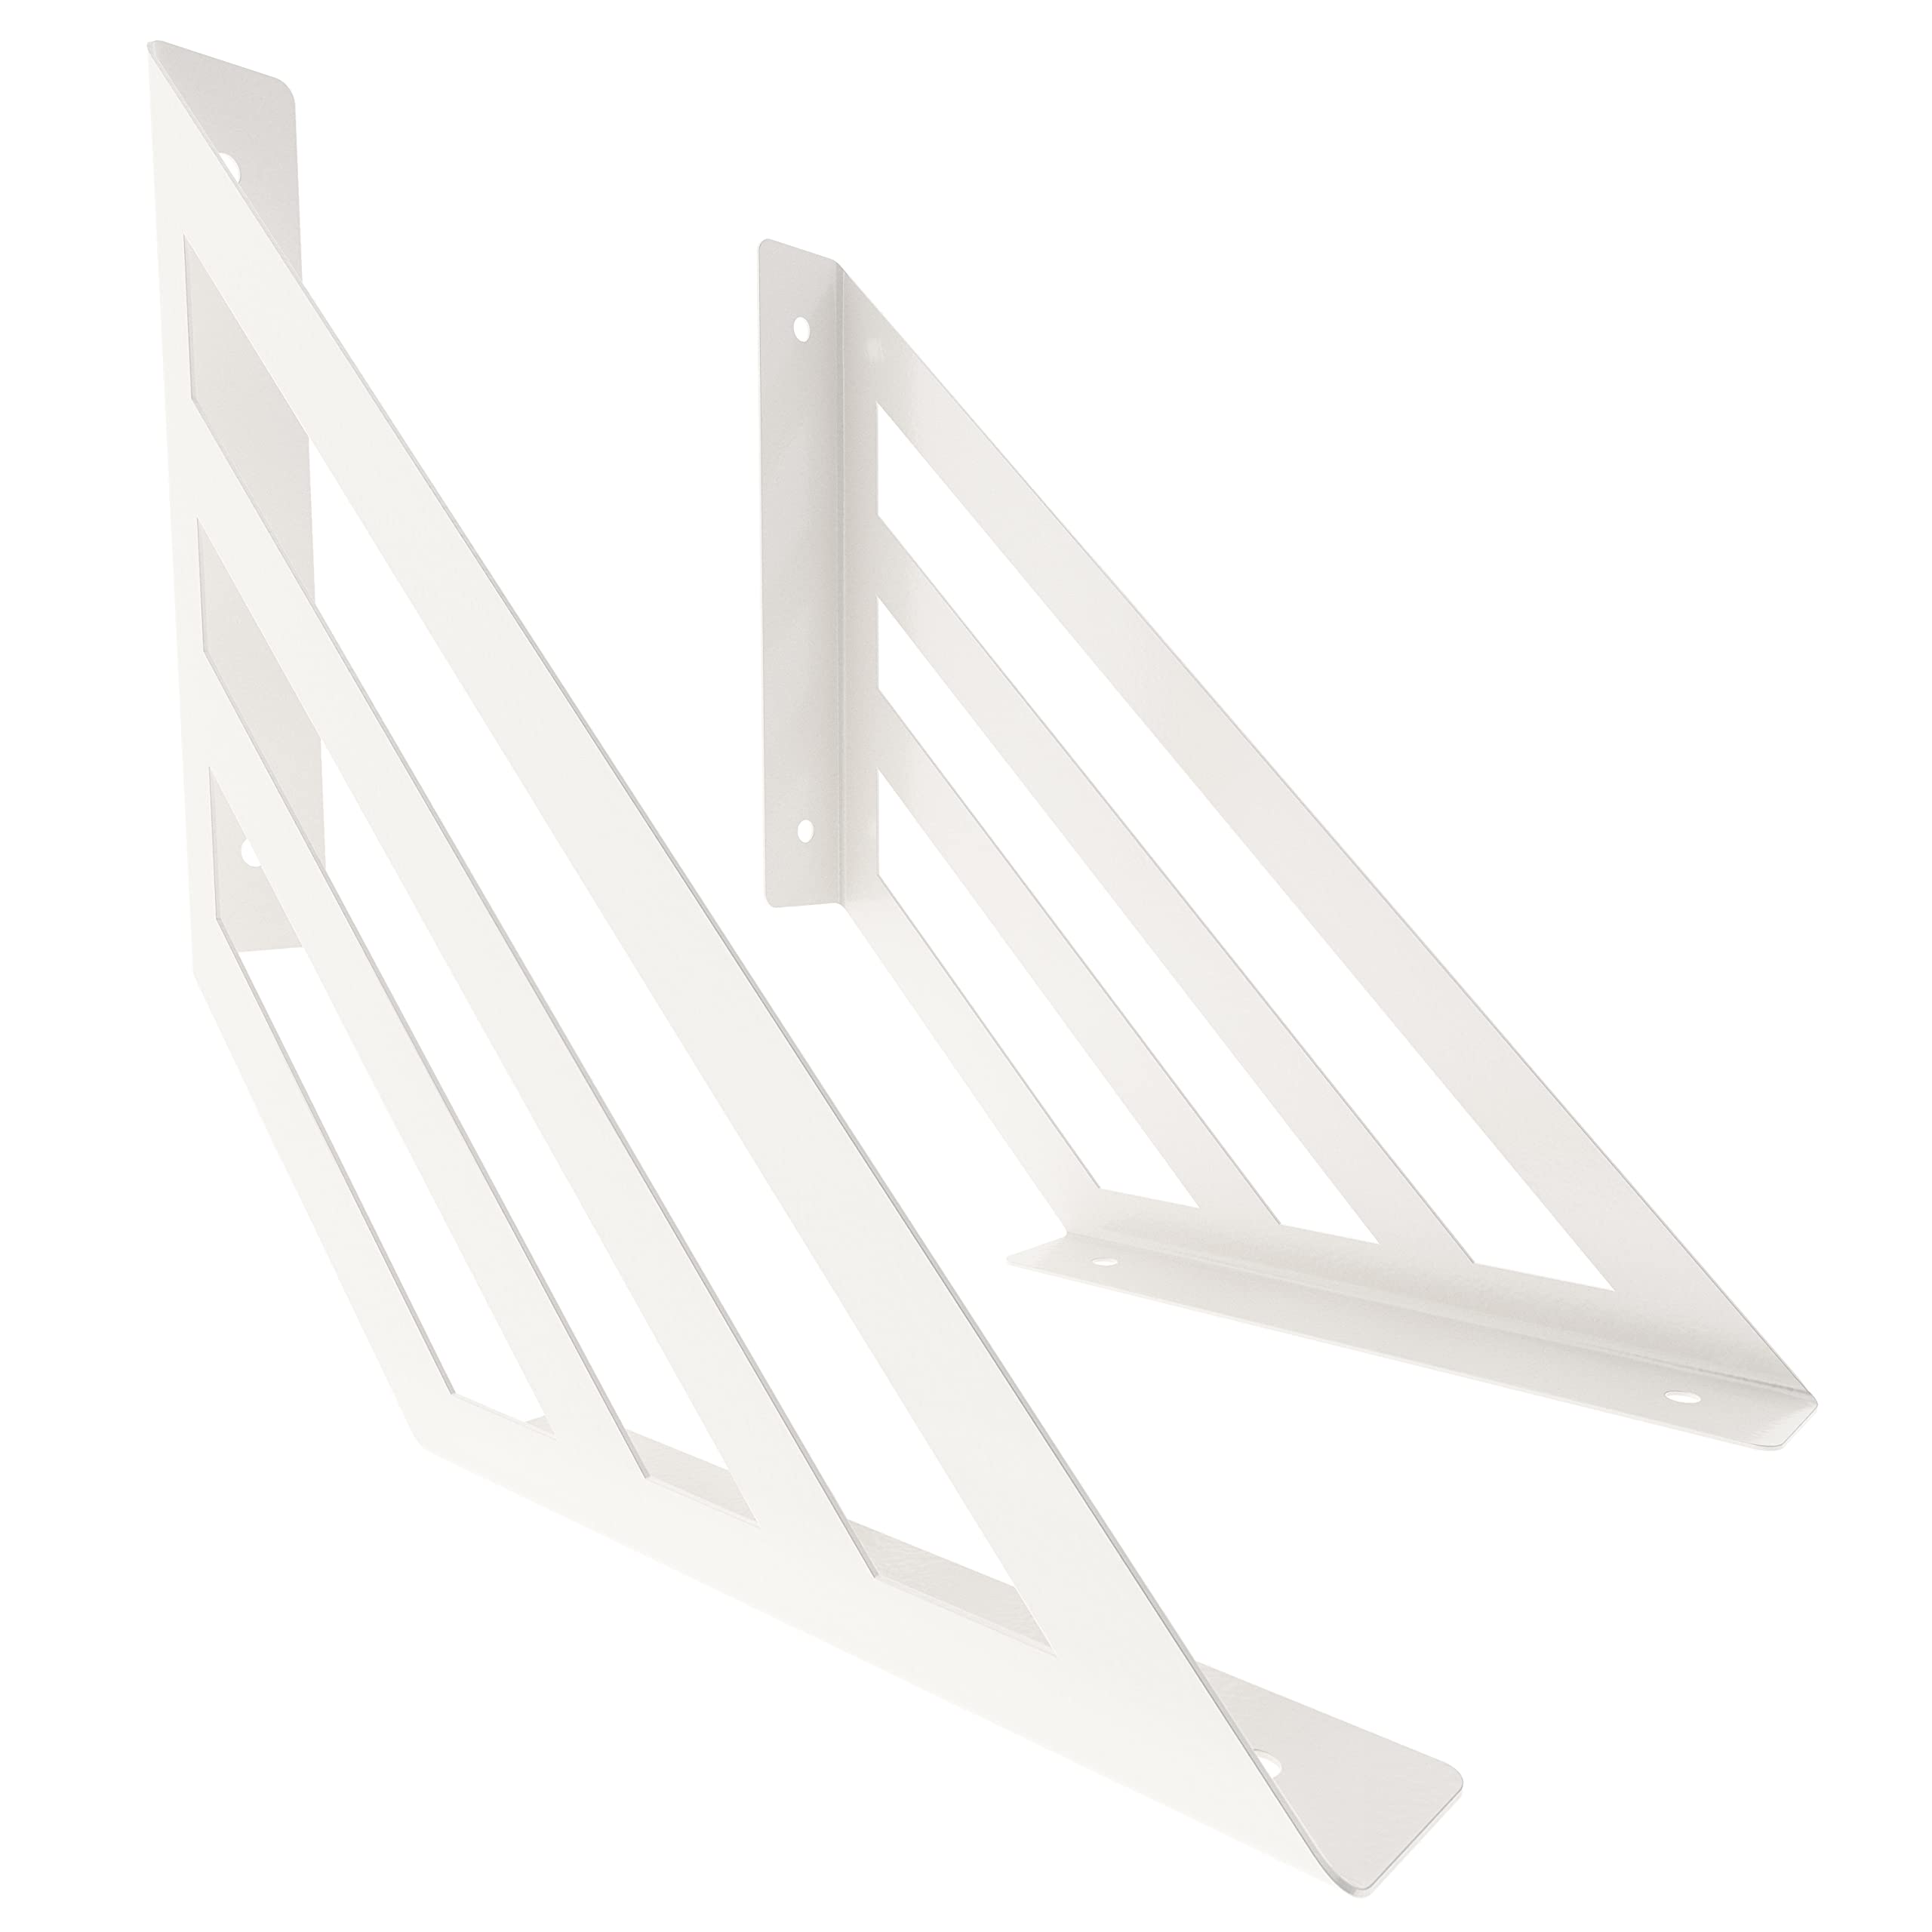 2 x sossai® Design Regalträger Truss | Regalwinkel | Wandhalterung für Regalbrett | Größe: 250 x 250 mm | Farbe: Weiß | Material: Stahl